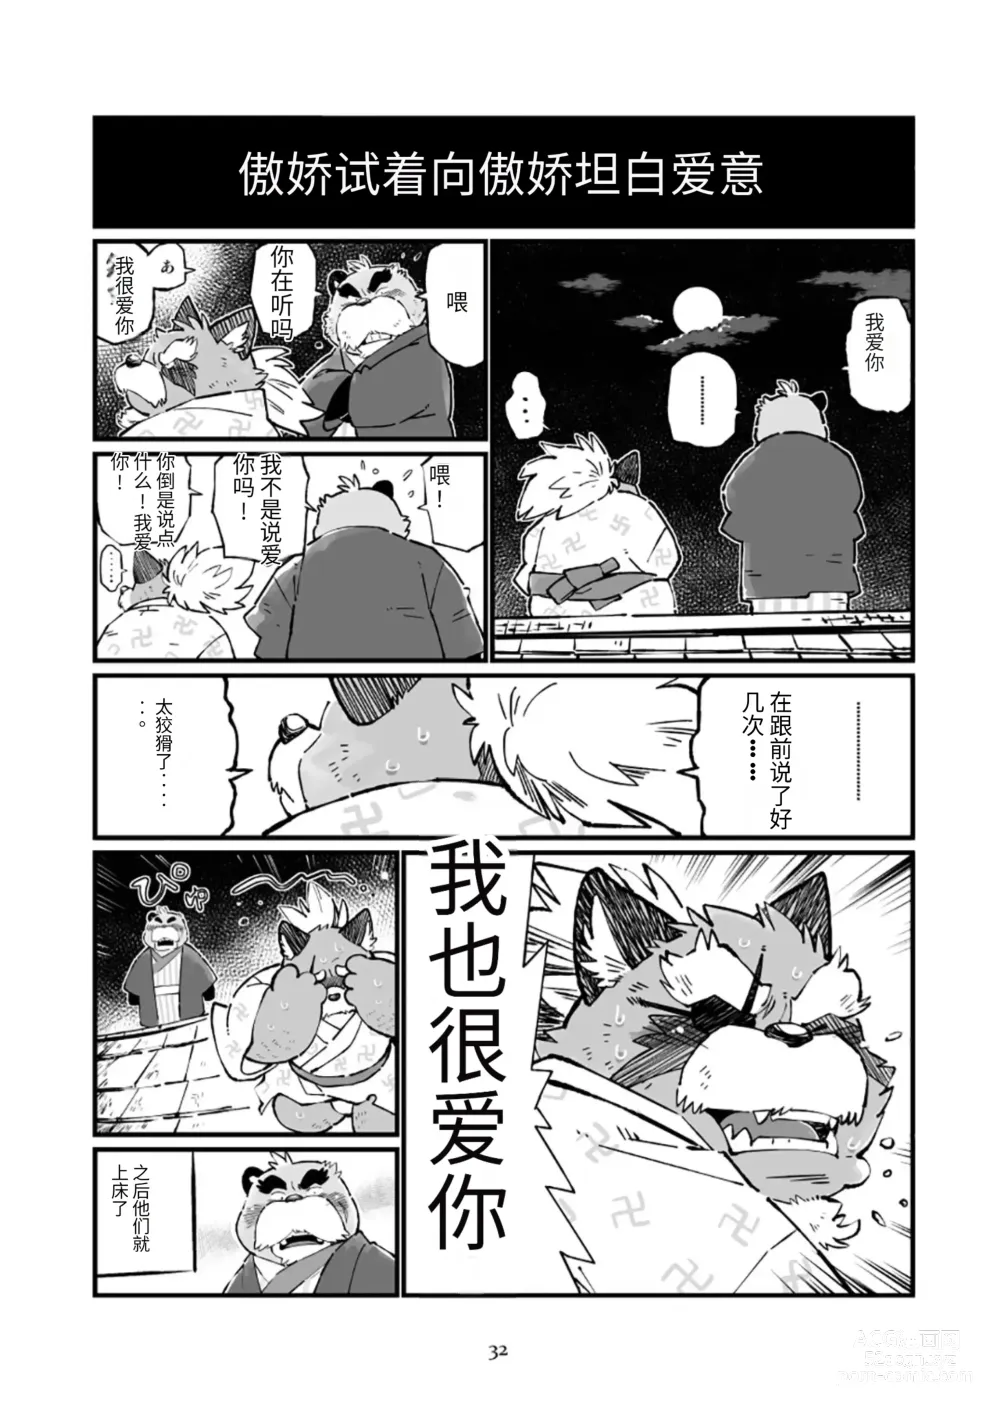 Page 32 of doujinshi 狗津原细见